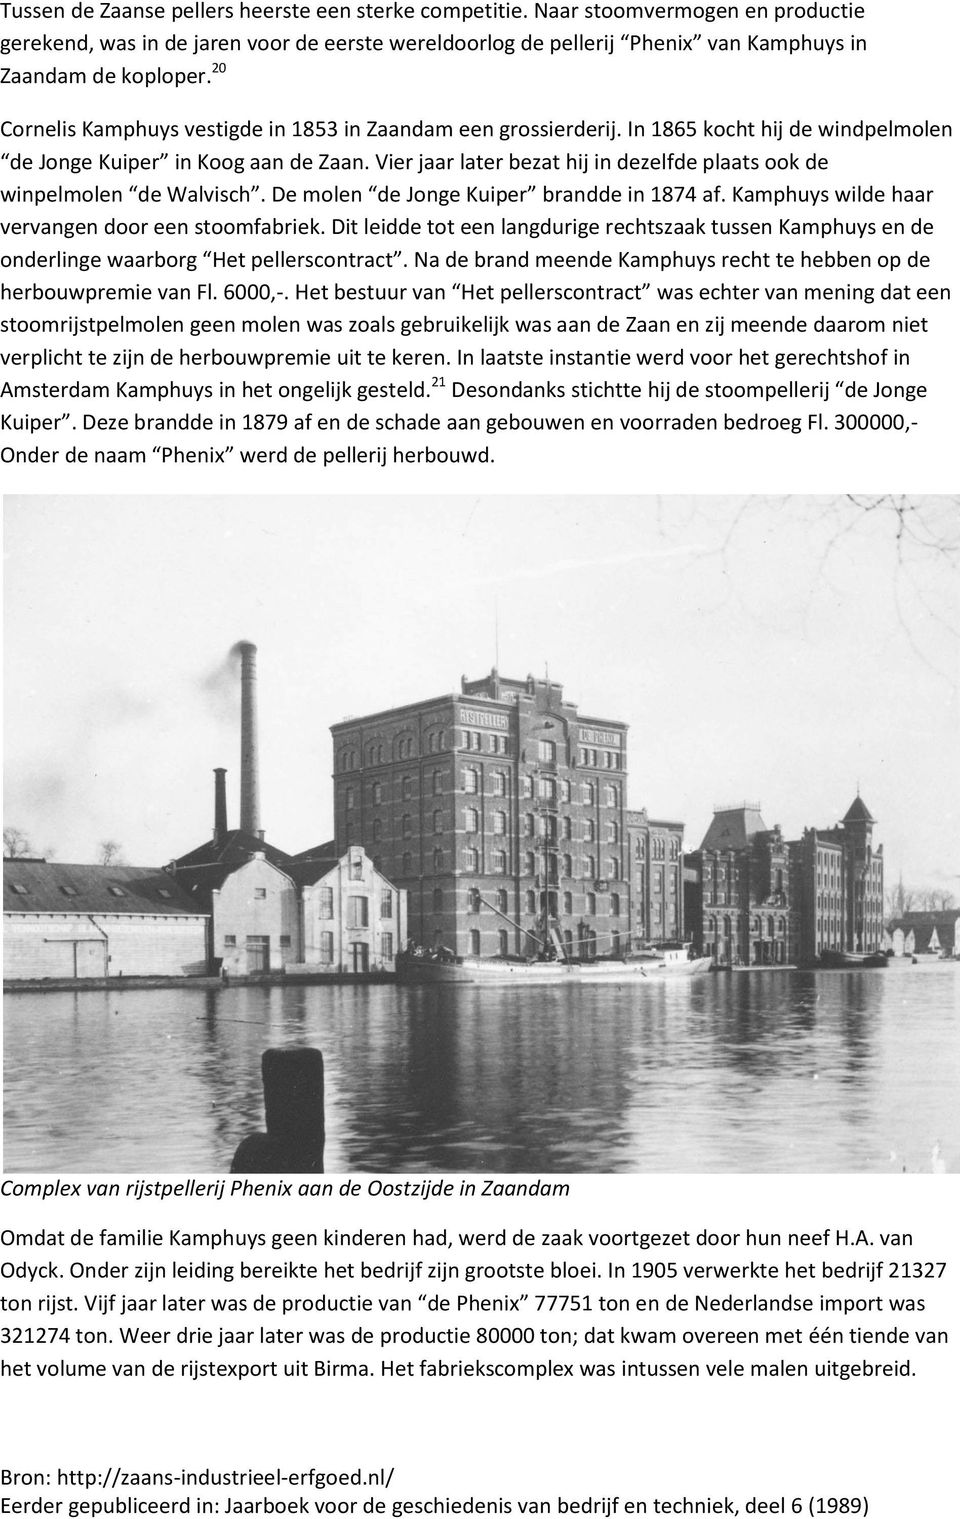 Vier jaar later bezat hij in dezelfde plaats ook de winpelmolen de Walvisch. De molen de Jonge Kuiper brandde in 1874 af. Kamphuys wilde haar vervangen door een stoomfabriek.